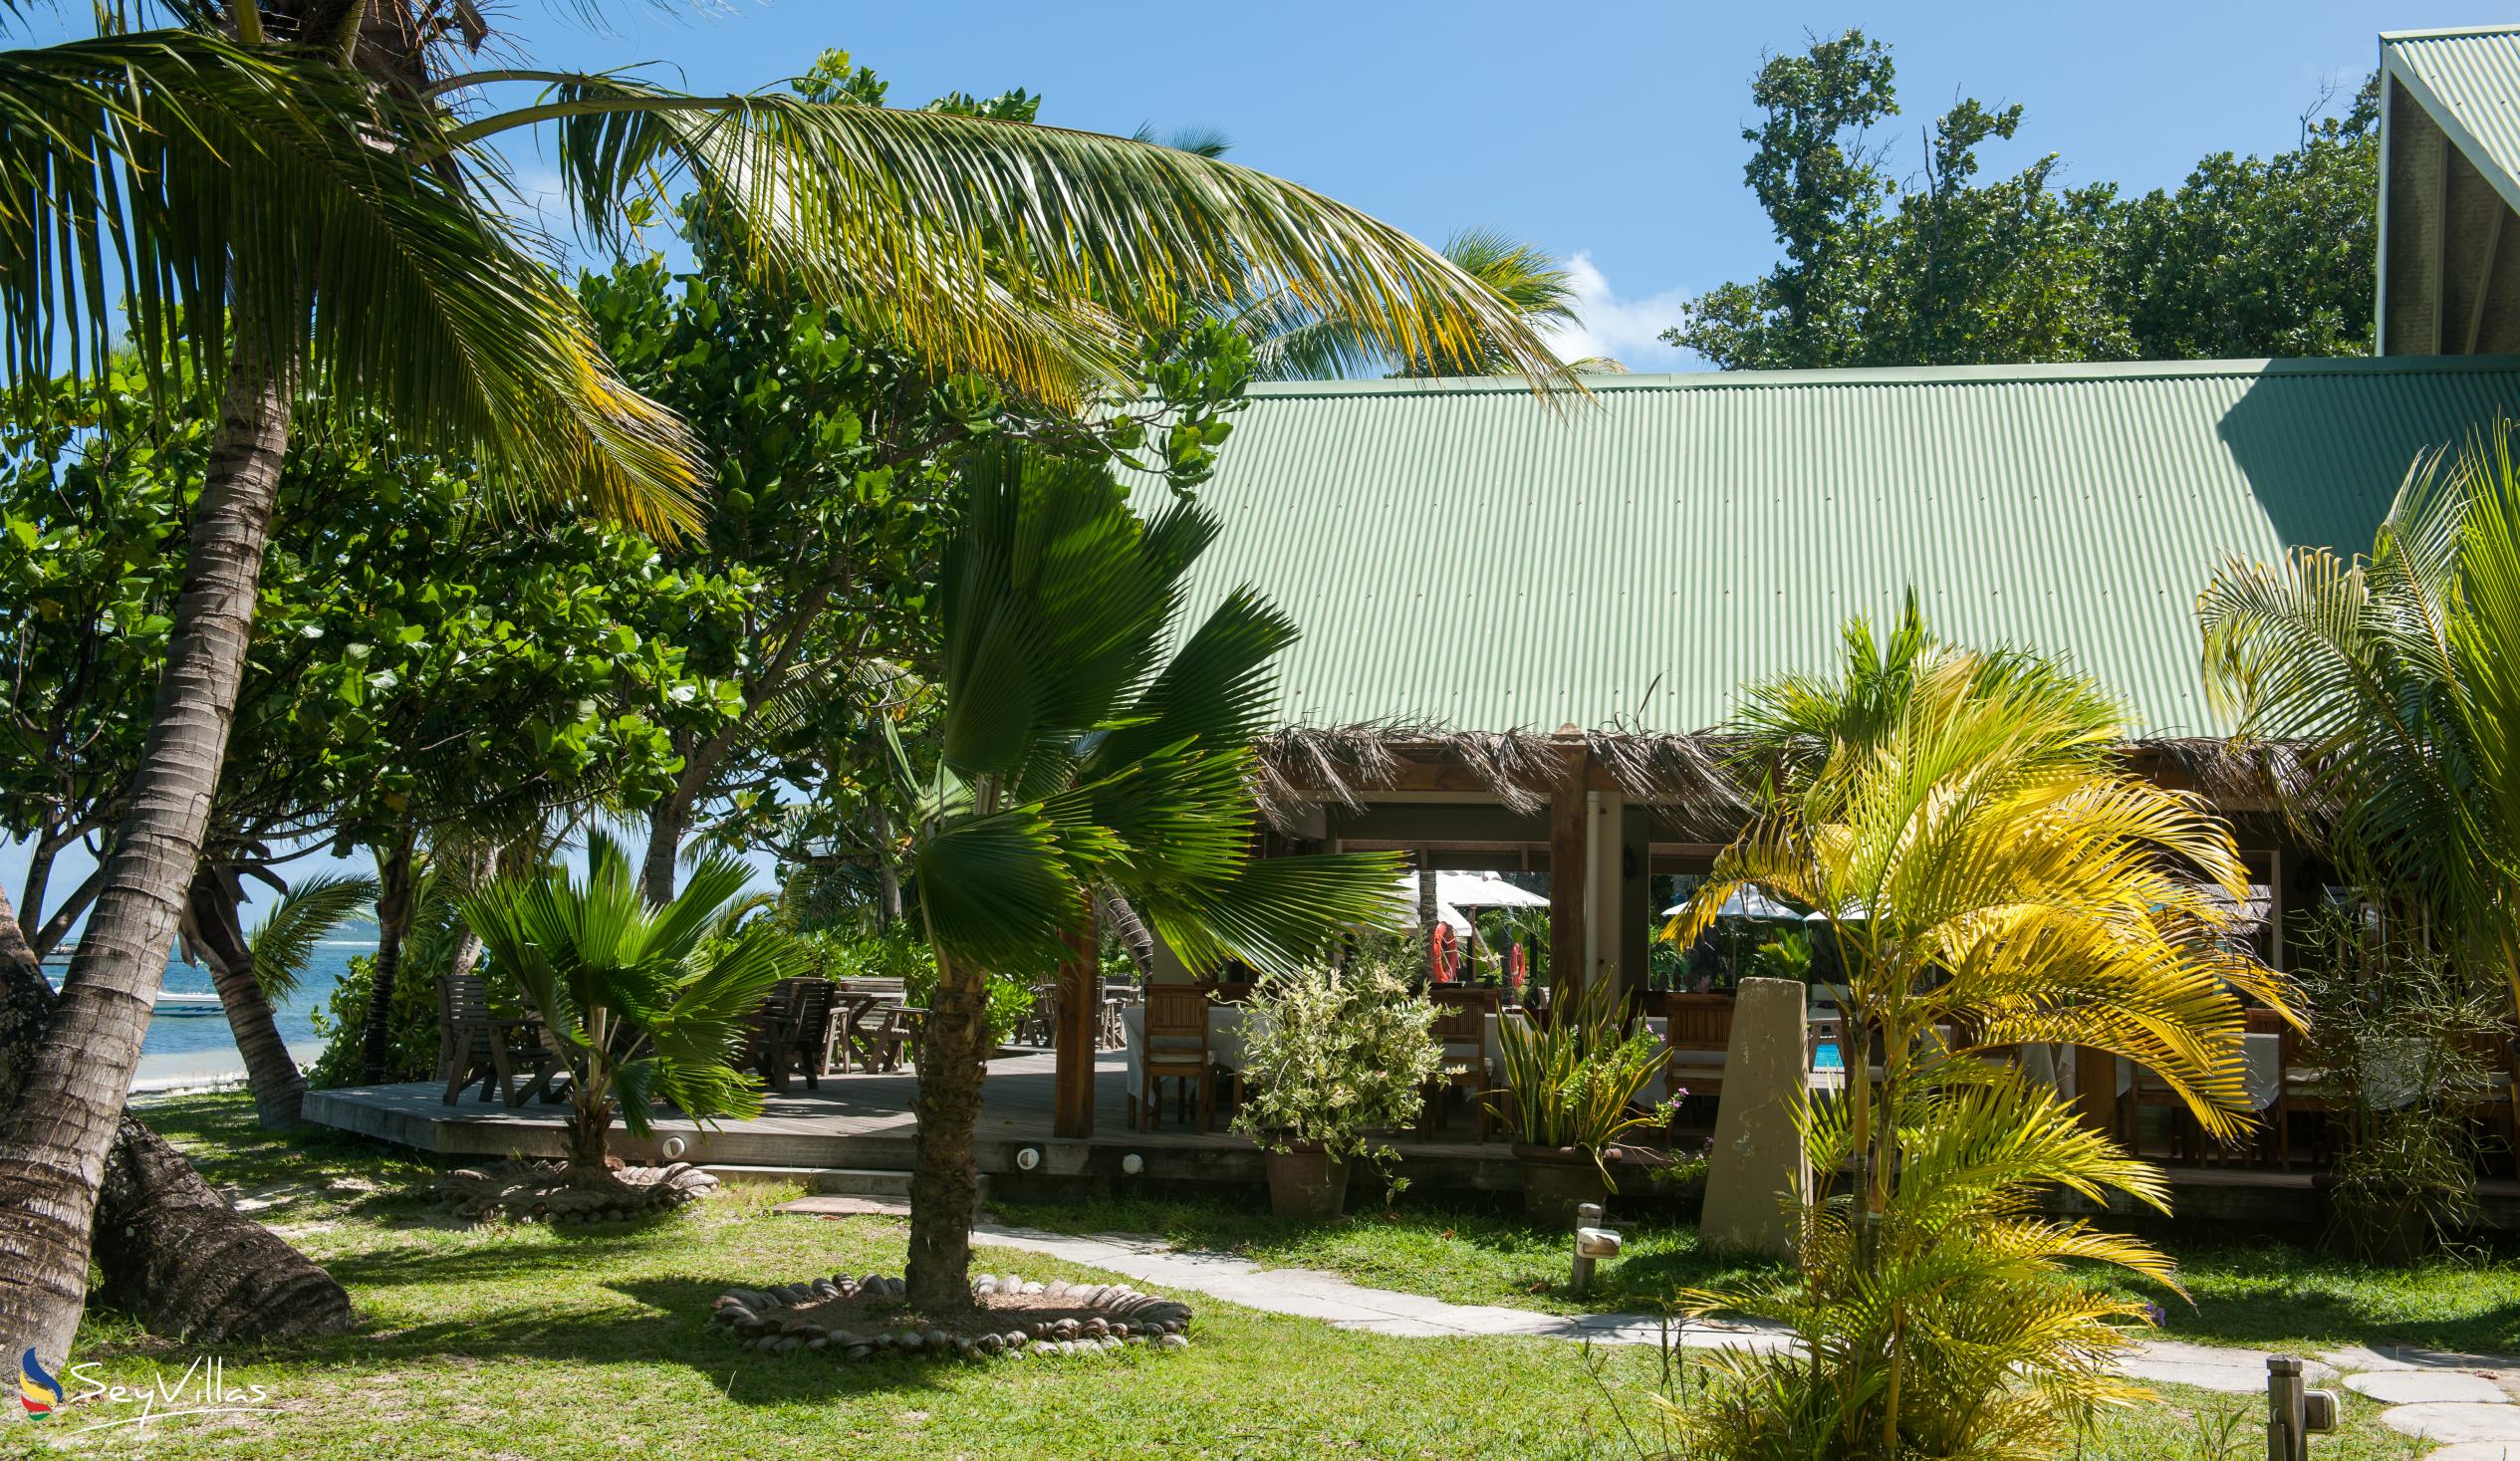 Foto 15: Indian Ocean Lodge - Aussenbereich - Praslin (Seychellen)